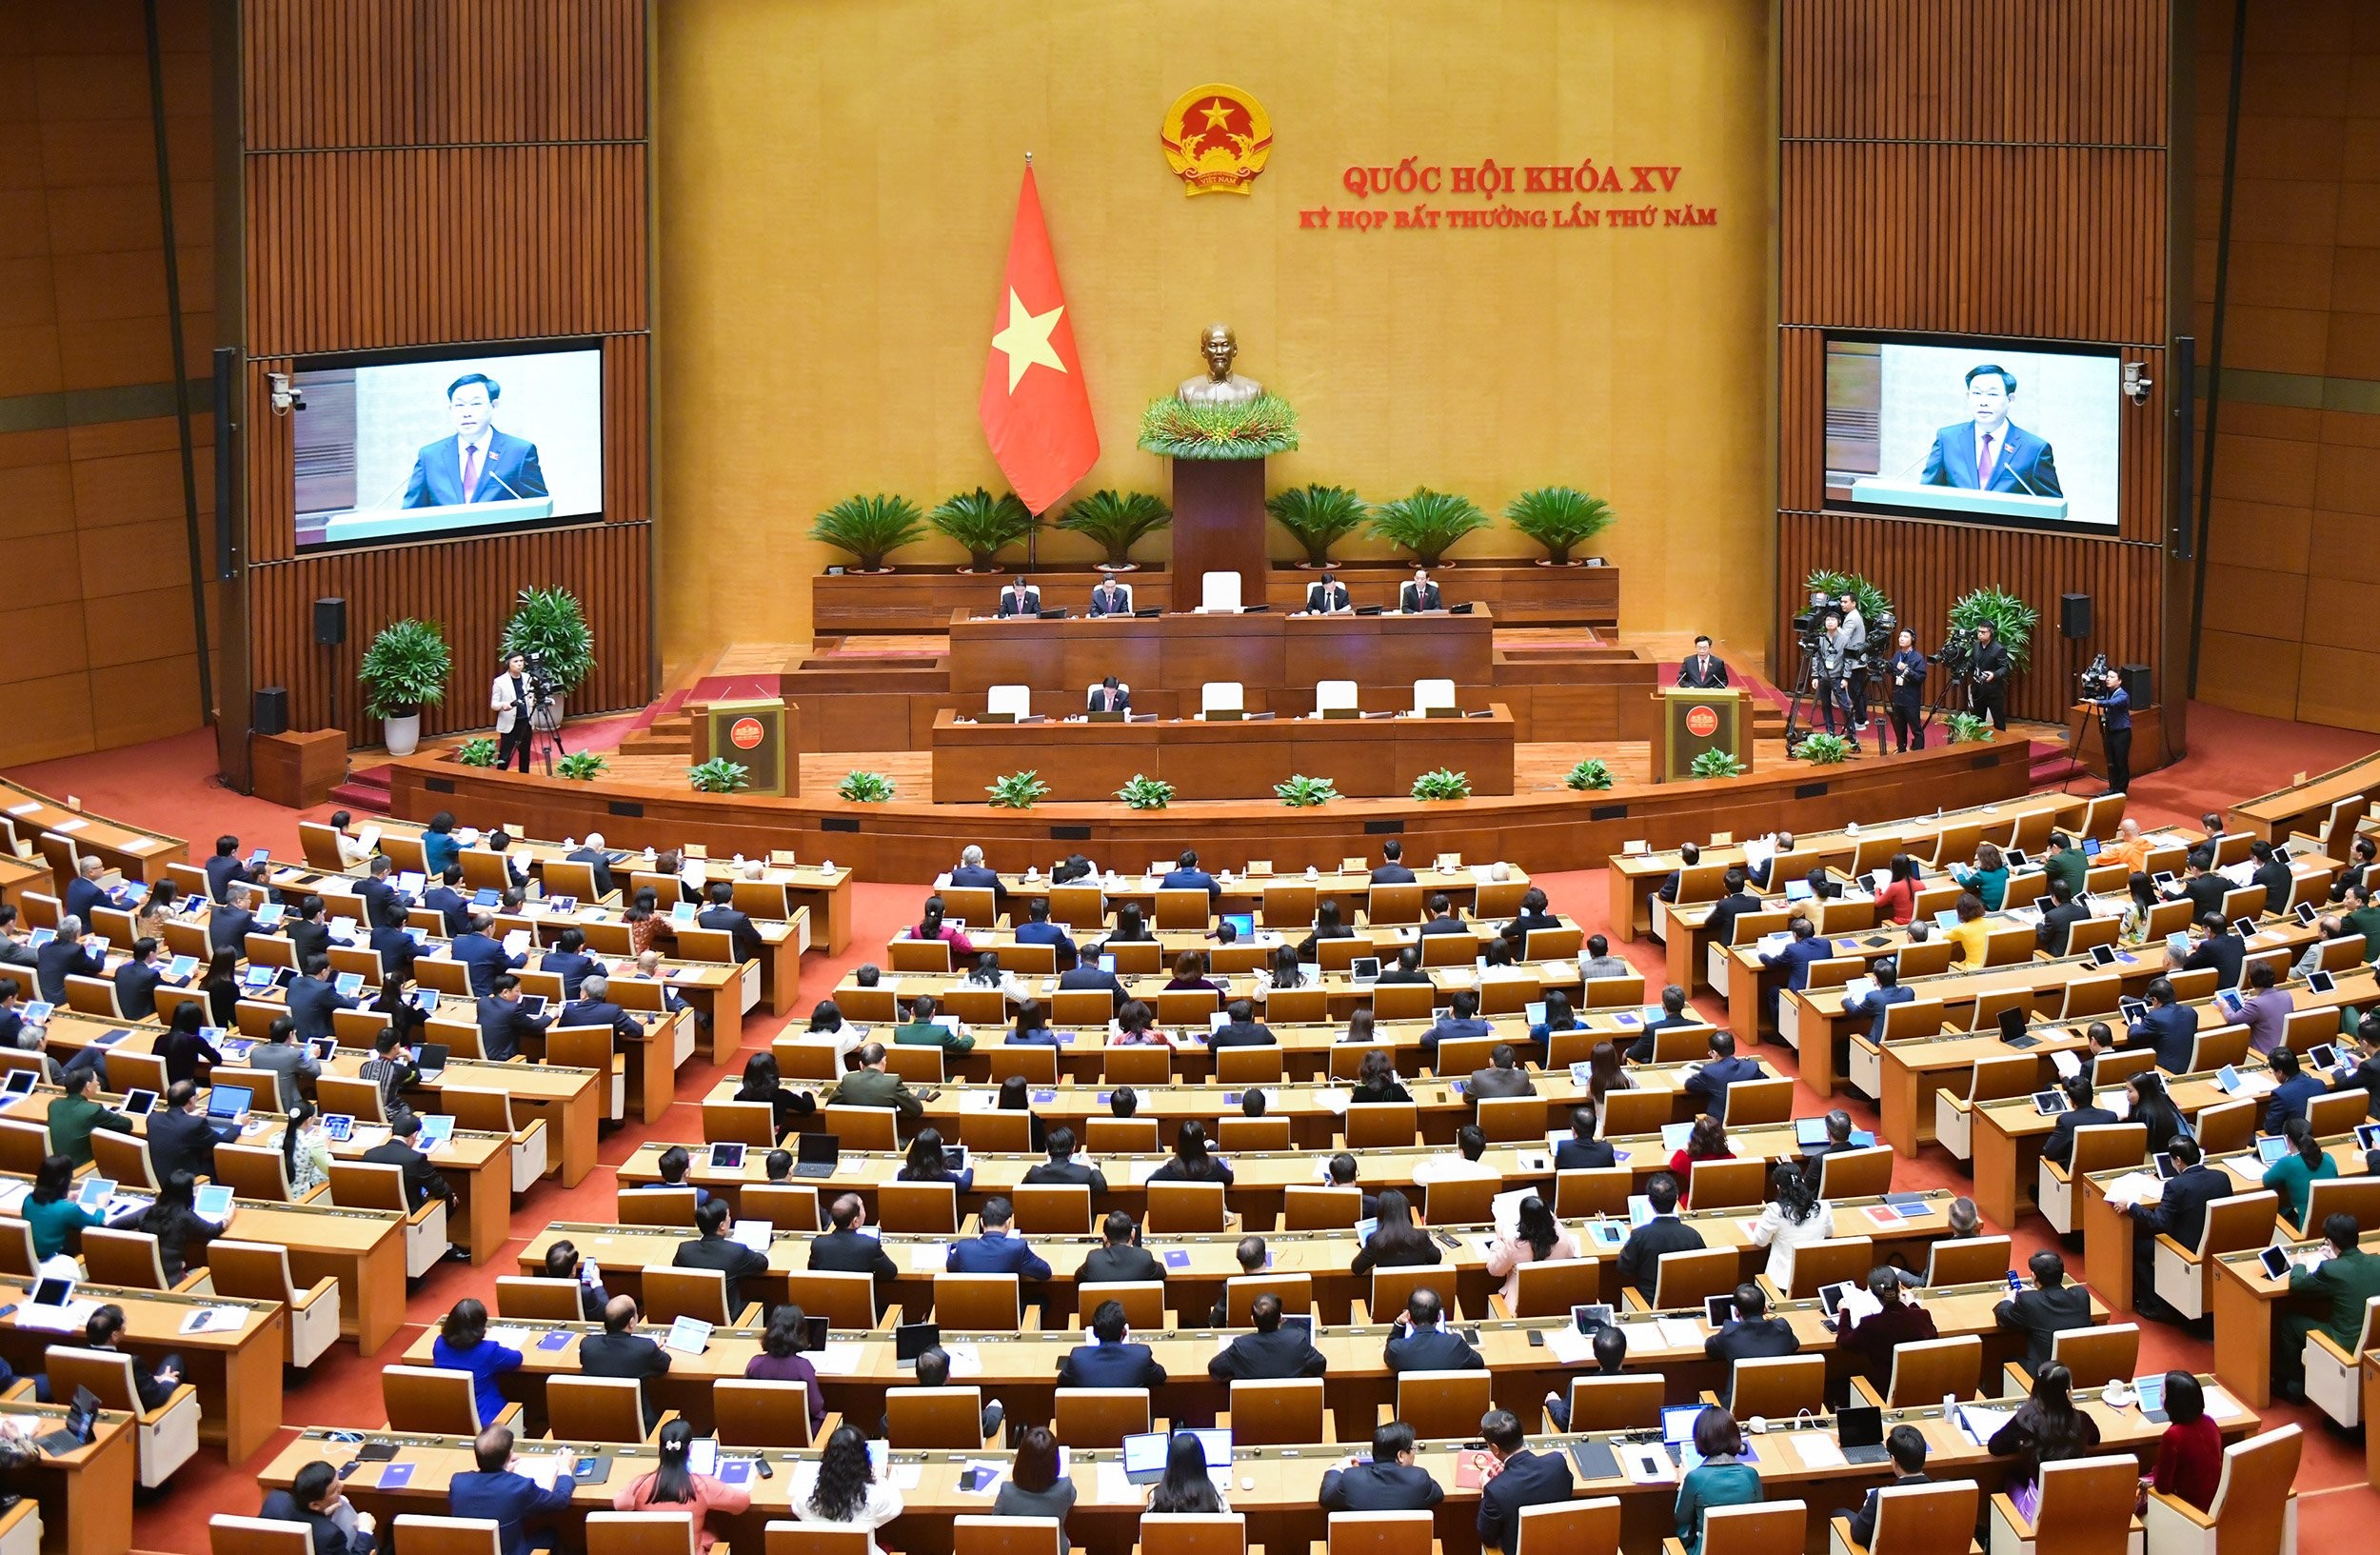 Quốc hội khai mạc kỳ họp bất thường lần thứ 5